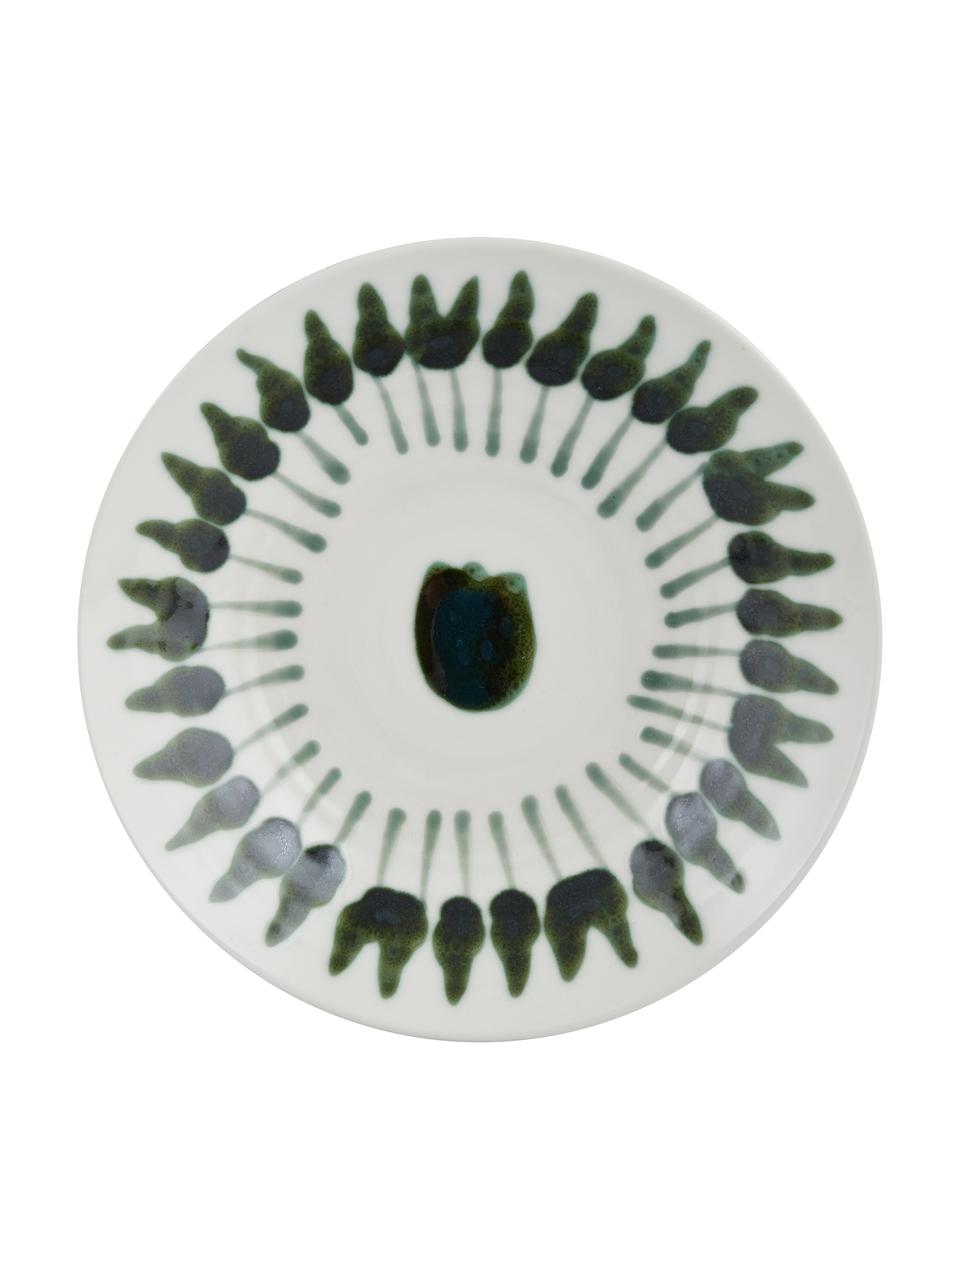 Handbemalter Suppenteller Sparks mit Pinselstrich-Dekor, Steingut, Weiss, Grün, Ø 22 cm